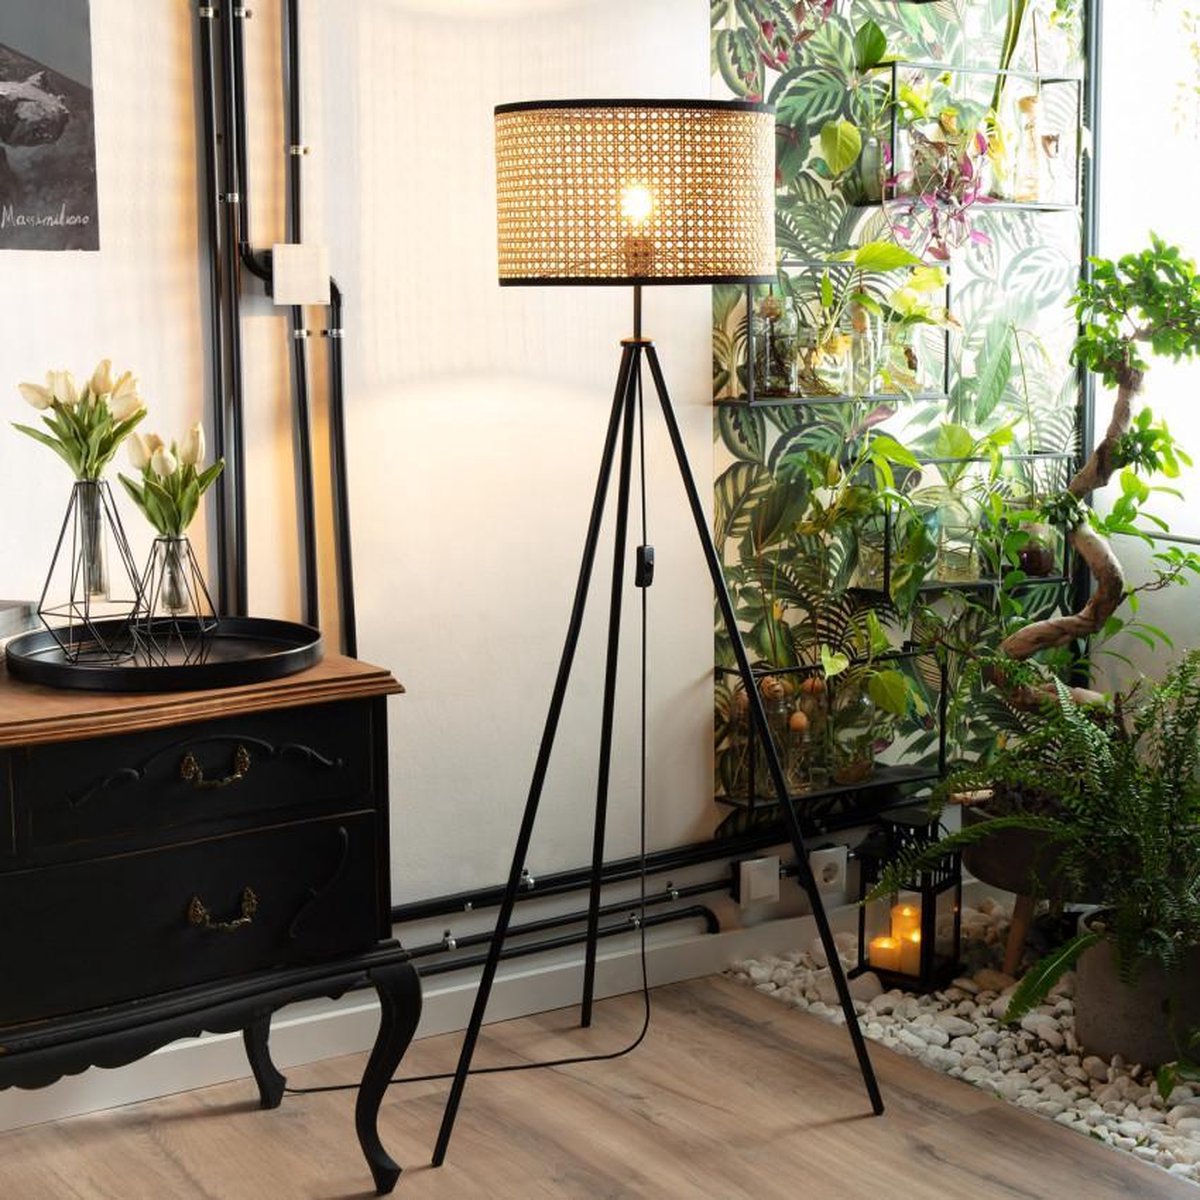 Staande lamp Rotan - vloerlamp hout bamboe woonkamer | bol.com